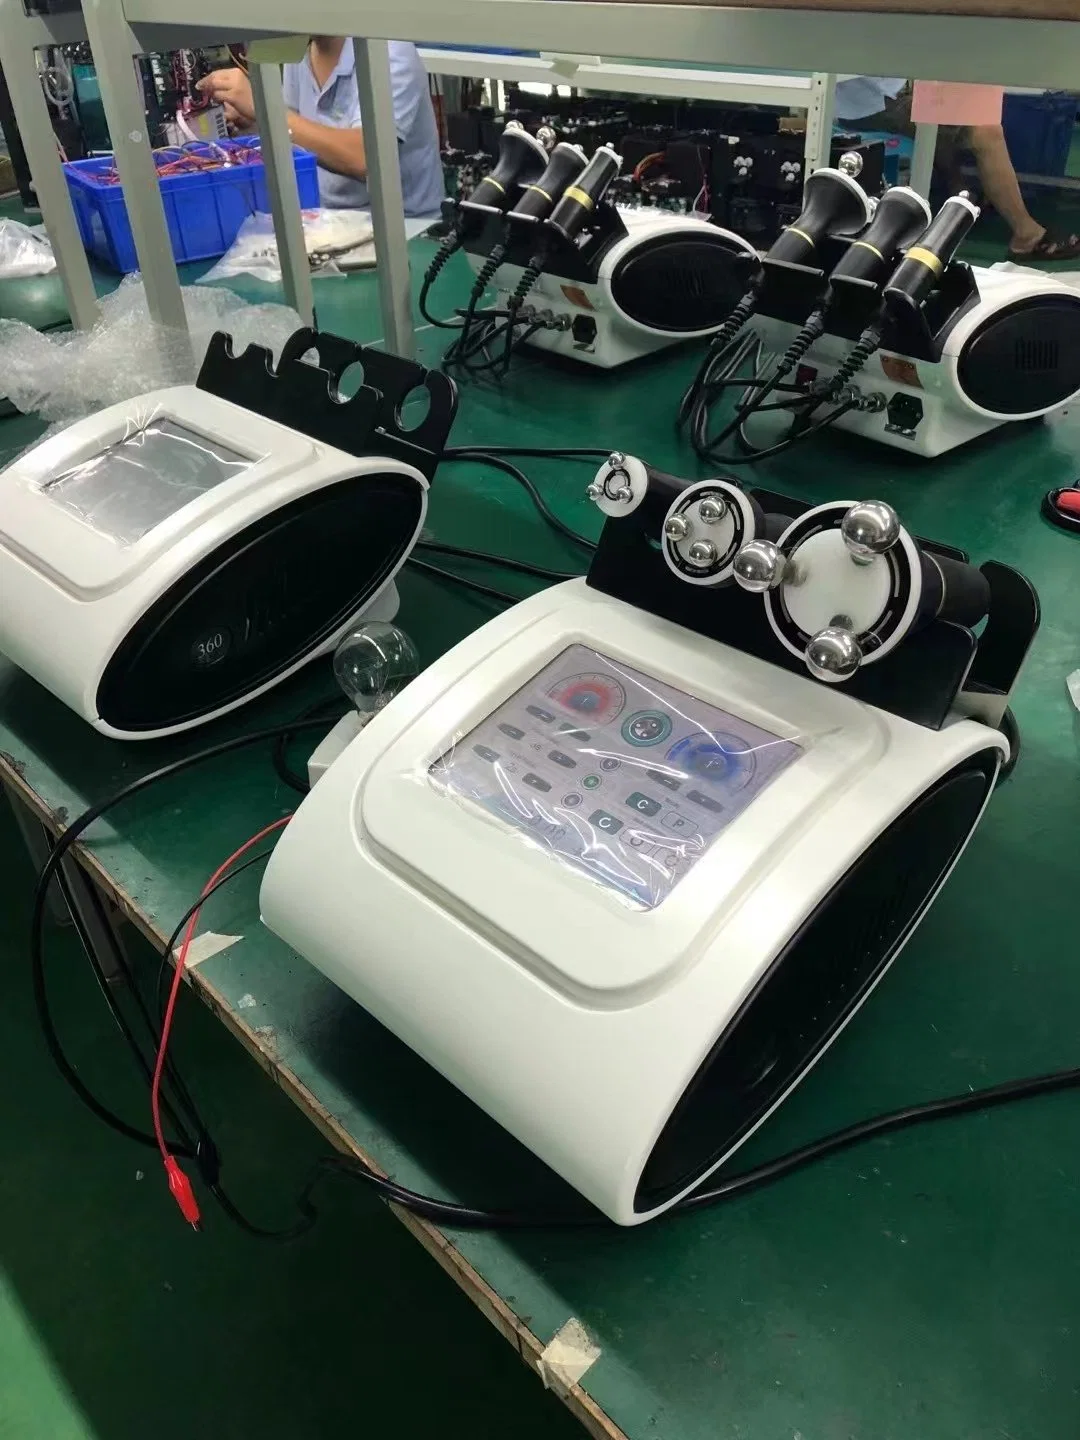 Nuevo Auto de infrarrojos de laminación de RF 360 Cara de apriete de la piel del dispositivo de elevación de la belleza de la terapia con LED.